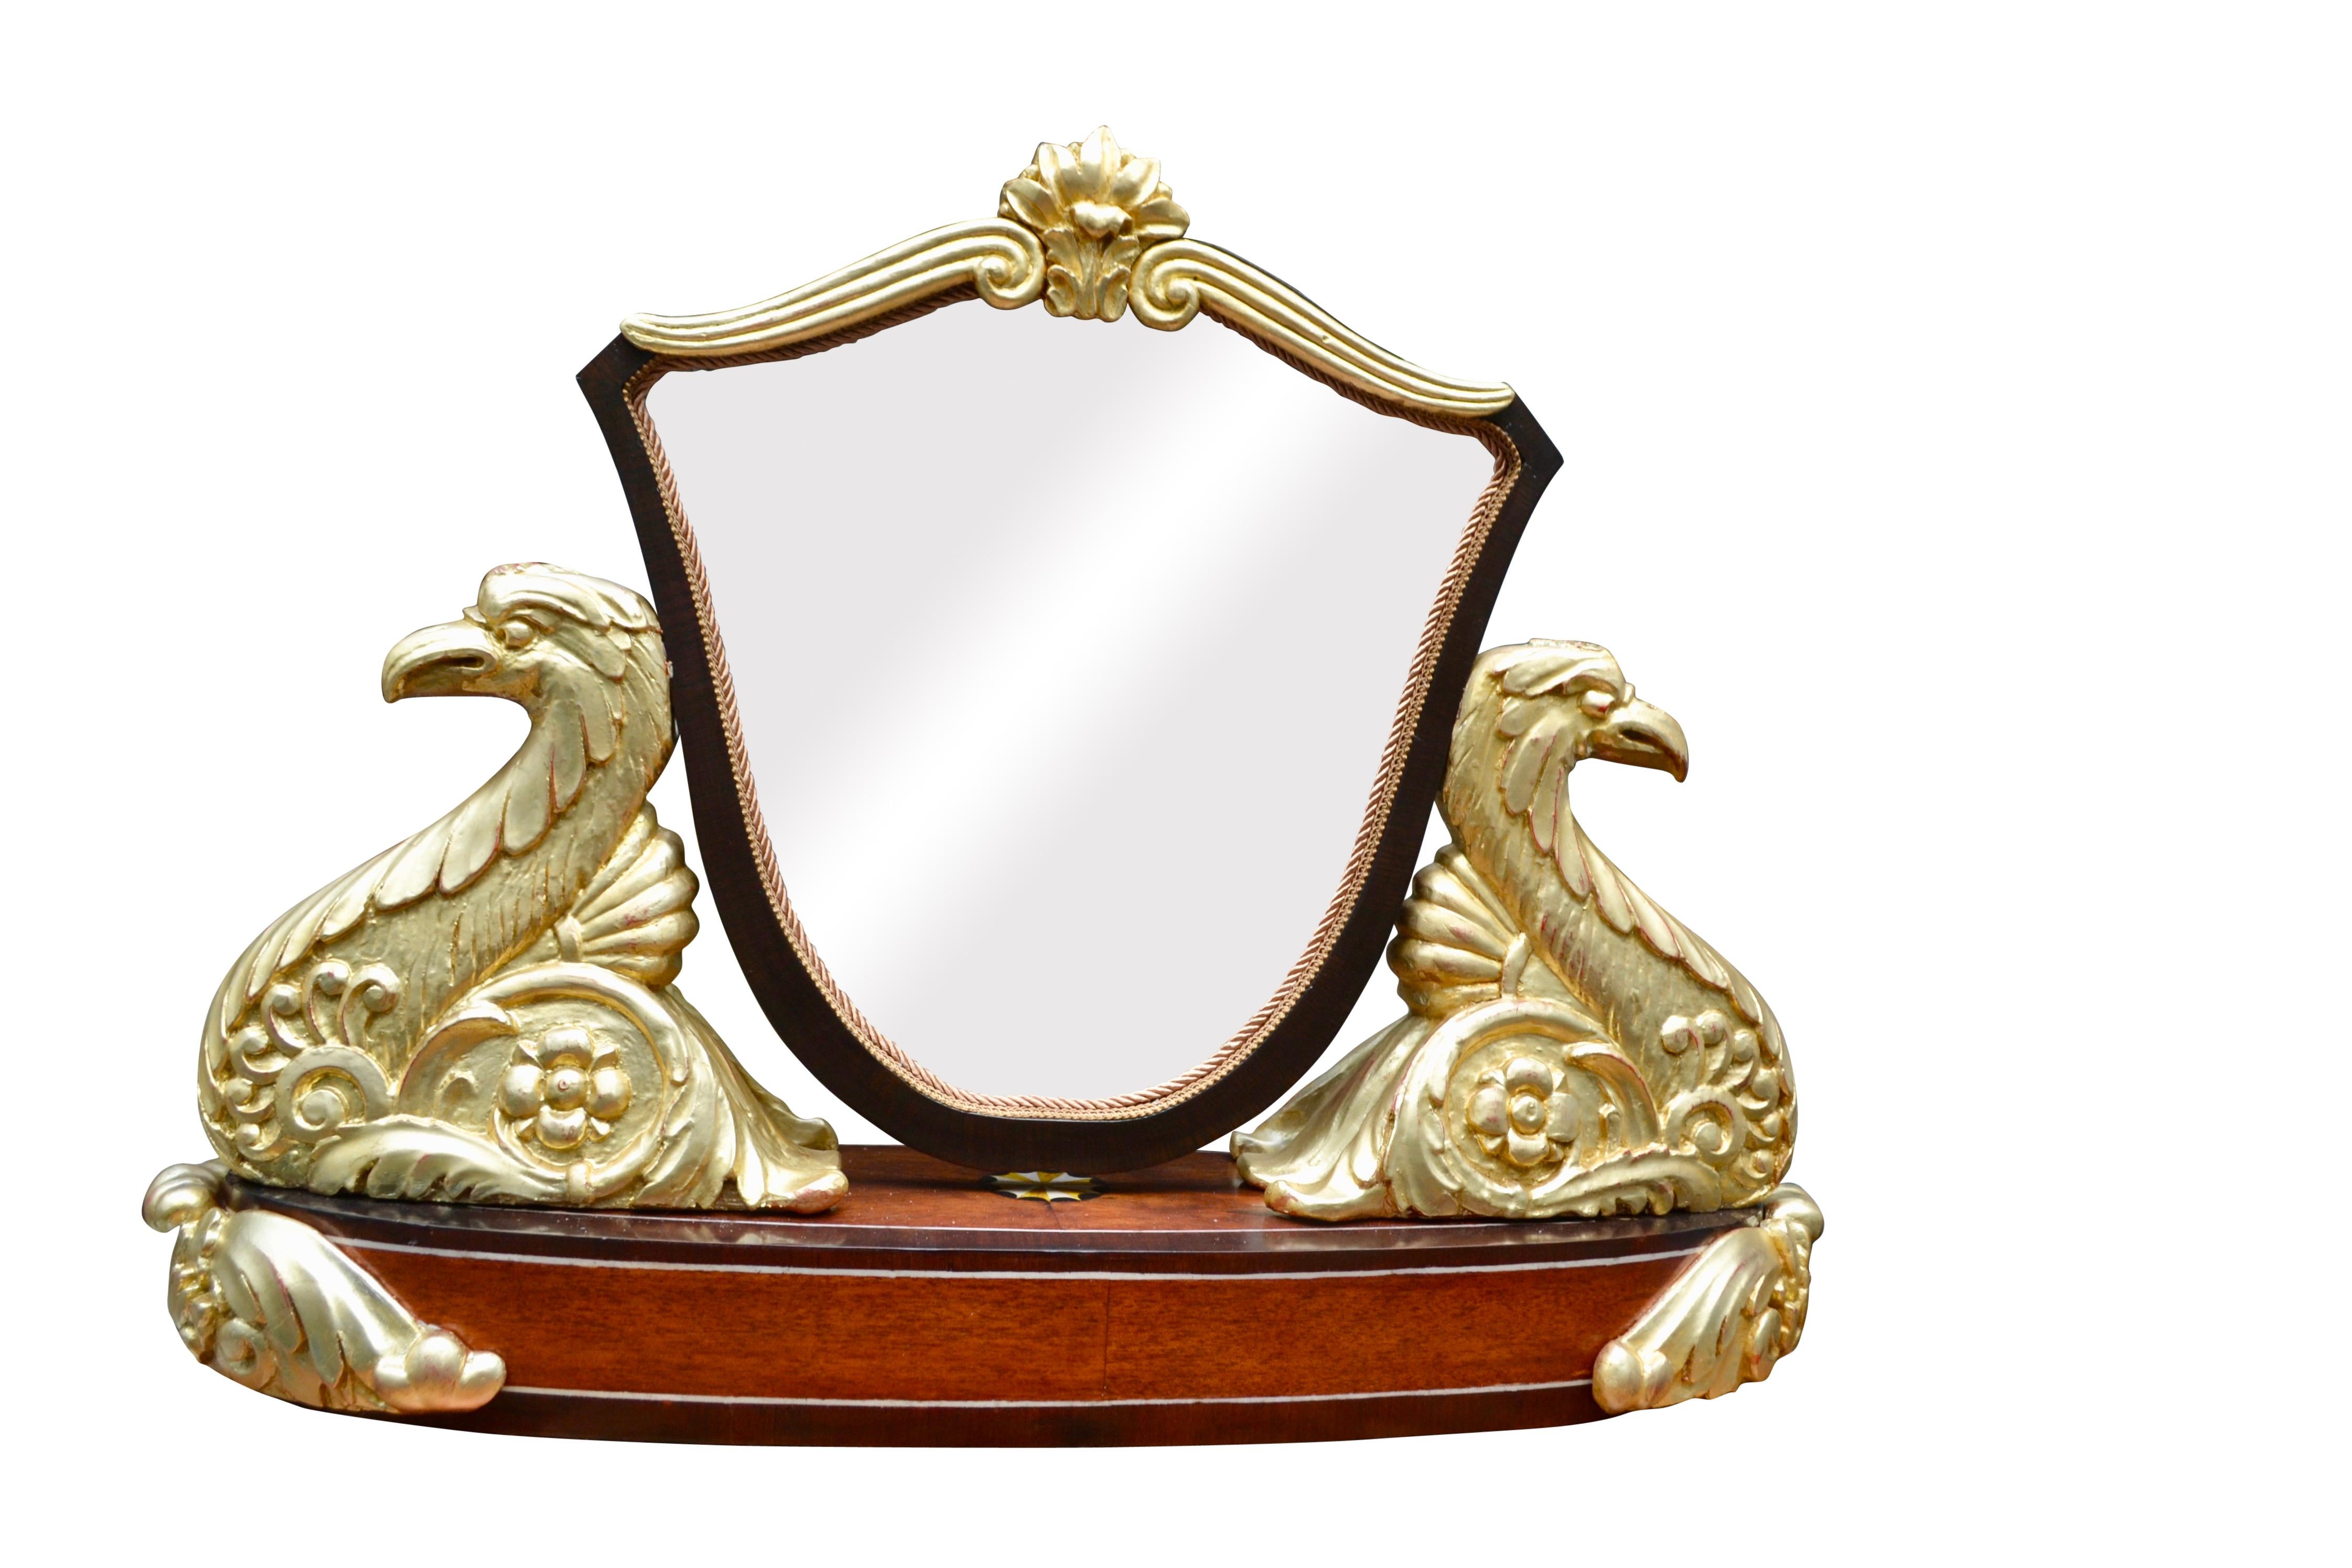 Wood Period Austrian Biedermeier Vanity Table Mirror For Sale